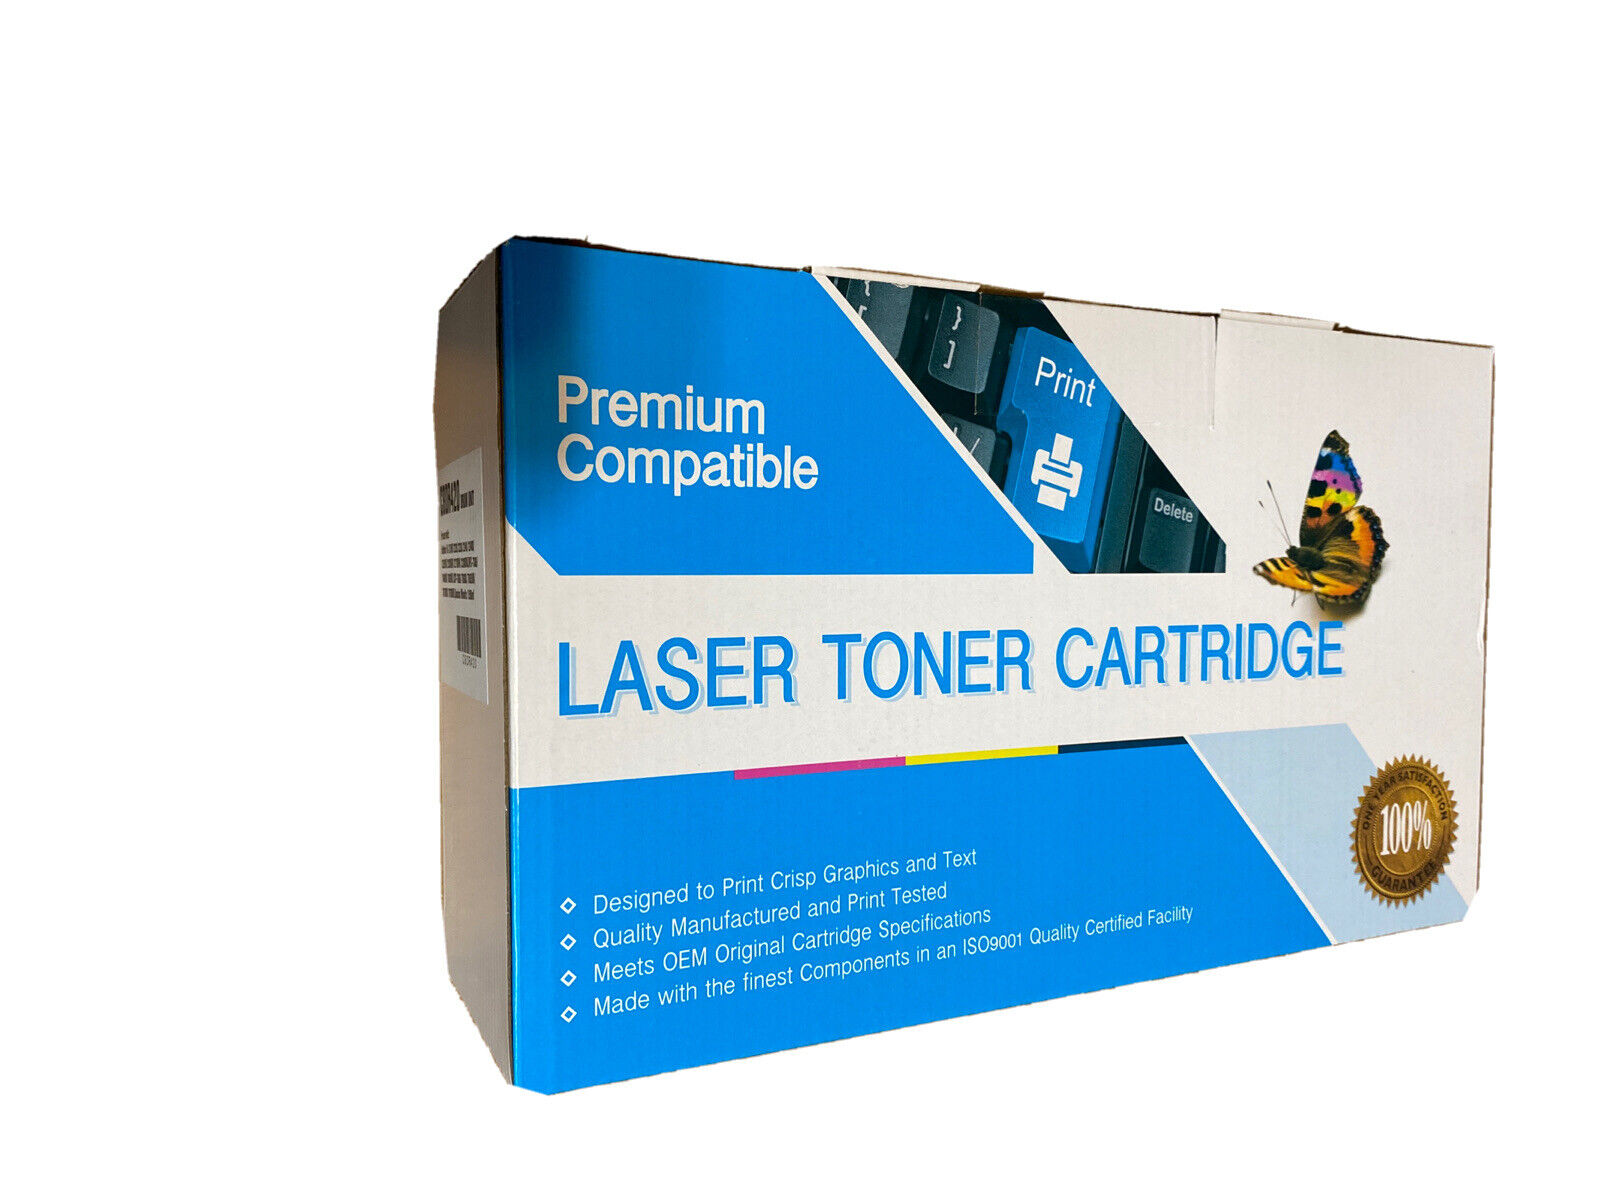 Premium Compatible Laser Toner Cartridge / CBDR420 Drum Unit